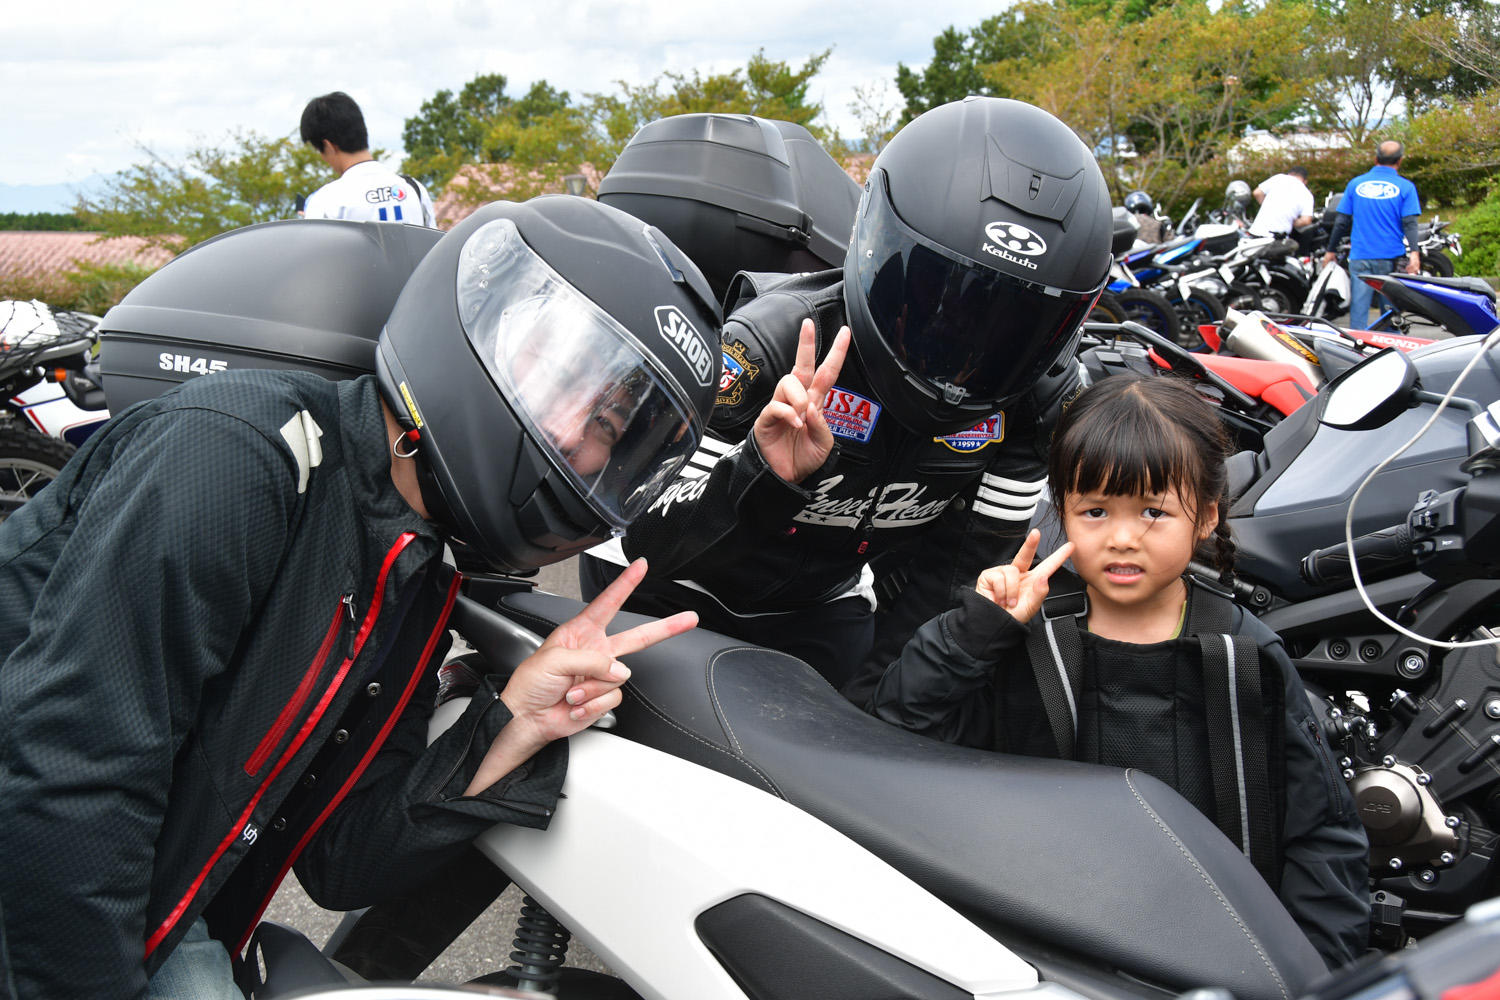 9 7 土 Yamaha Motorcycle Day 19を阿蘇で開催 東会場は9 28 土 山梨県 ふじてんリゾートで開催します ヤマハ バイク ブログ ヤマハ発動機株式会社